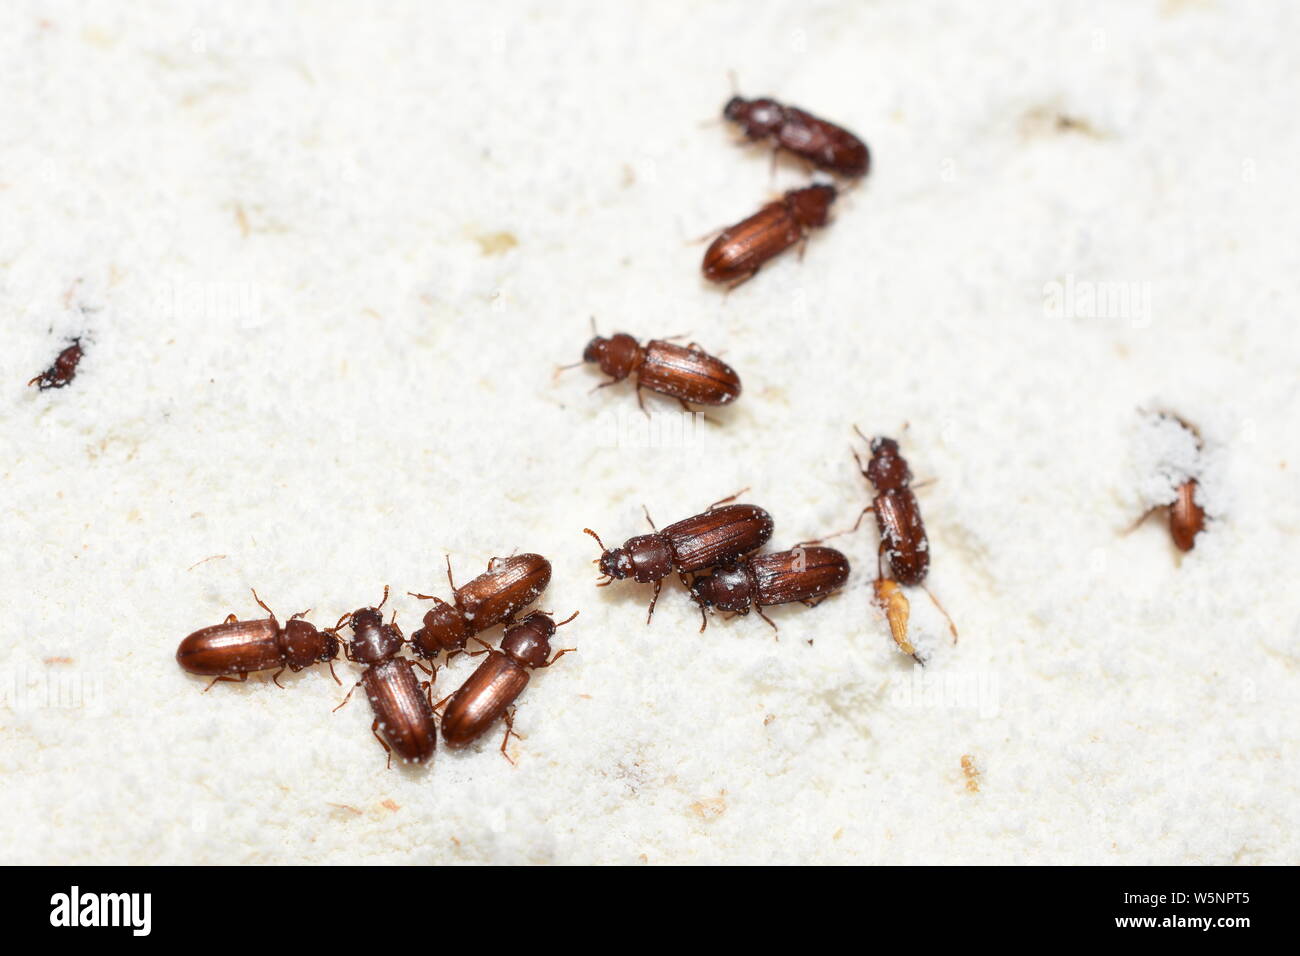 La plaga alimentaria confundió el escarabajo de harina Tribolium confusum en harina de trigo Foto de stock